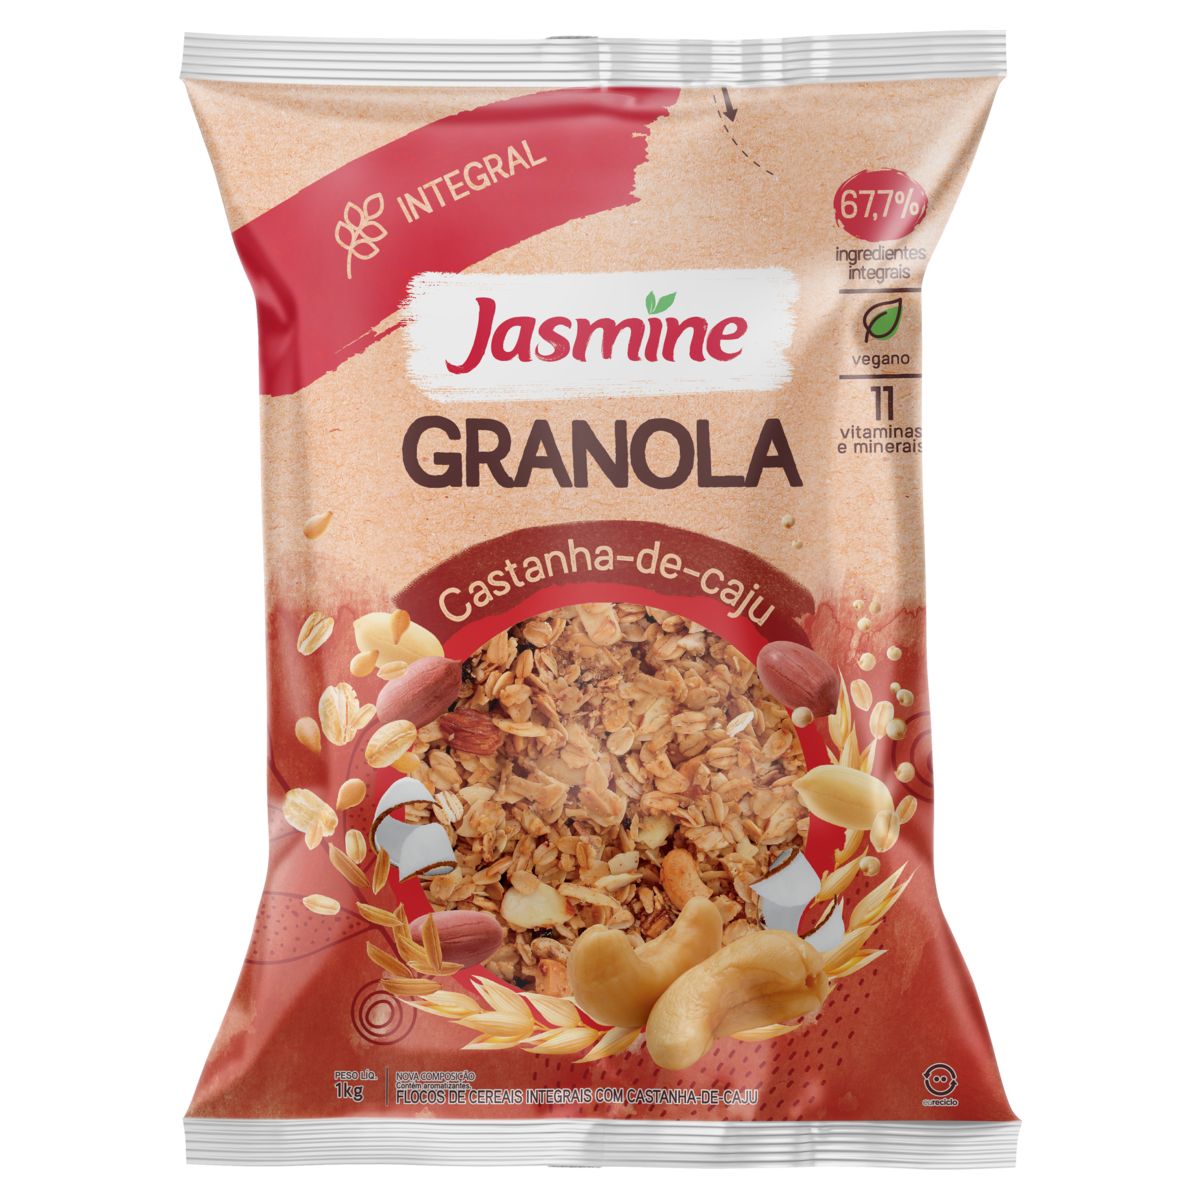 Granola Jasmine 67,7% Integral Castanha-de-Caju Pacote 1kg